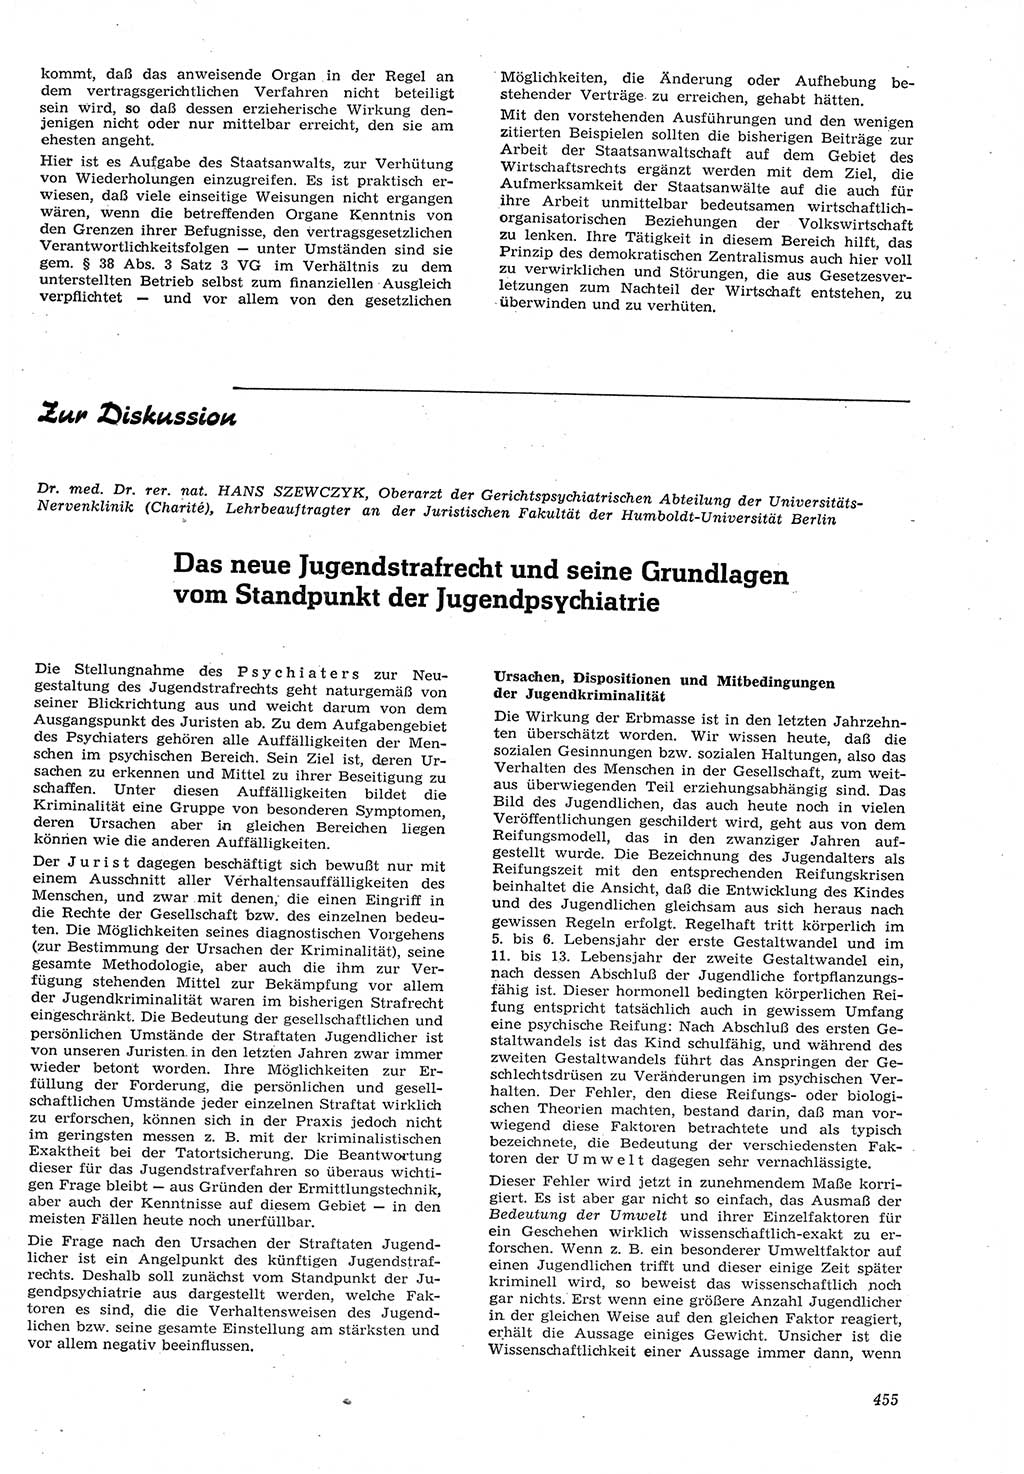 Neue Justiz (NJ), Zeitschrift für Recht und Rechtswissenschaft [Deutsche Demokratische Republik (DDR)], 15. Jahrgang 1961, Seite 455 (NJ DDR 1961, S. 455)